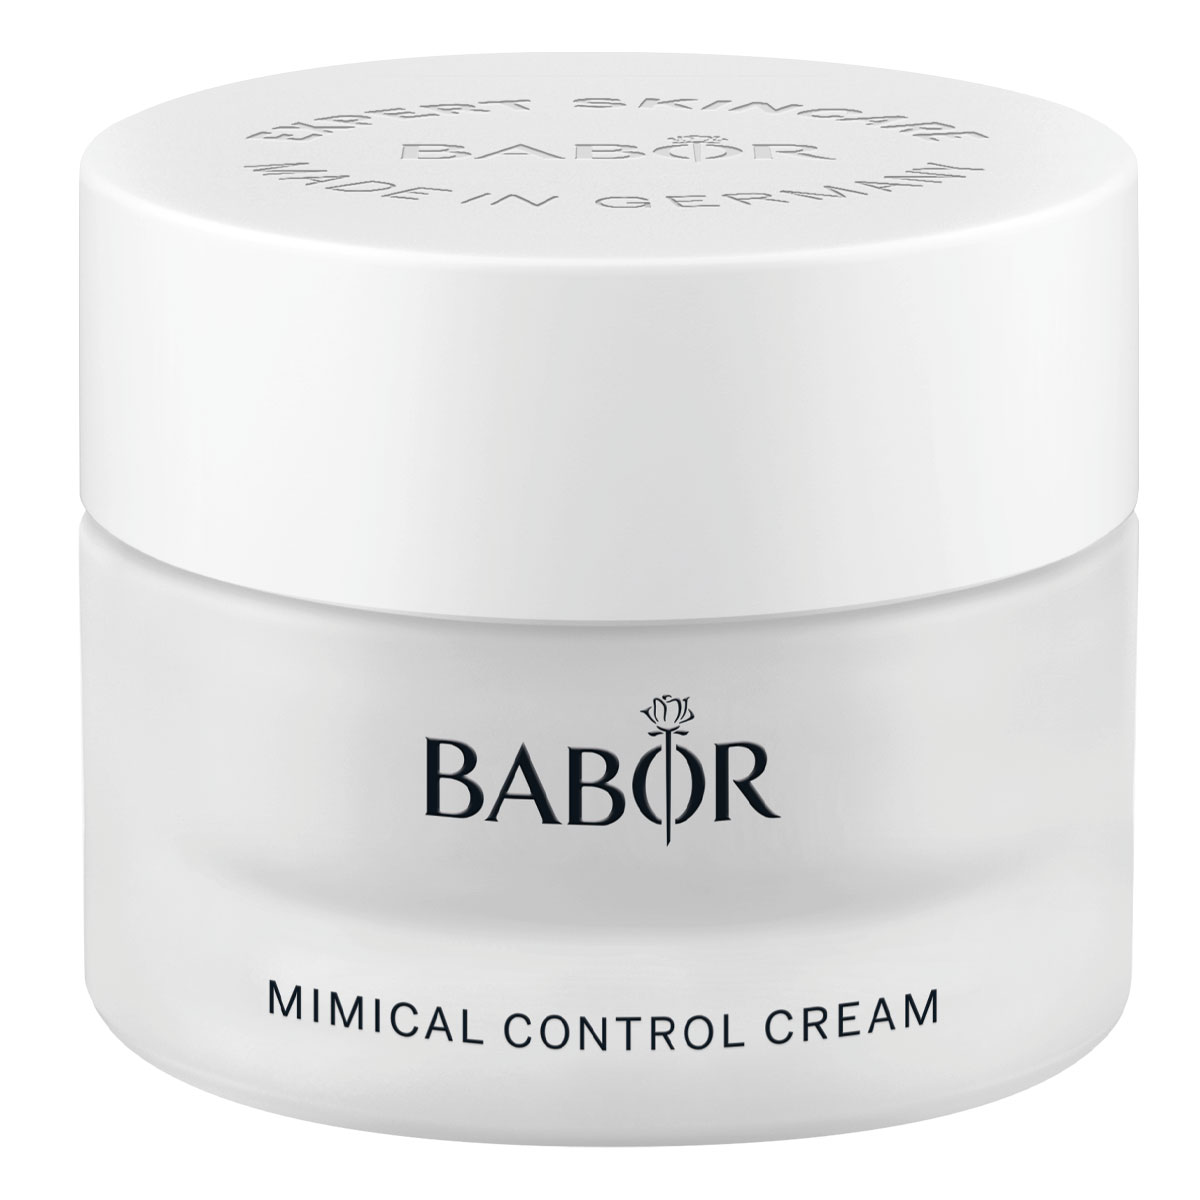 BABOR Mimical Control Cream 50ml - интернет-магазин профессиональной косметики Spadream, изображение 41727